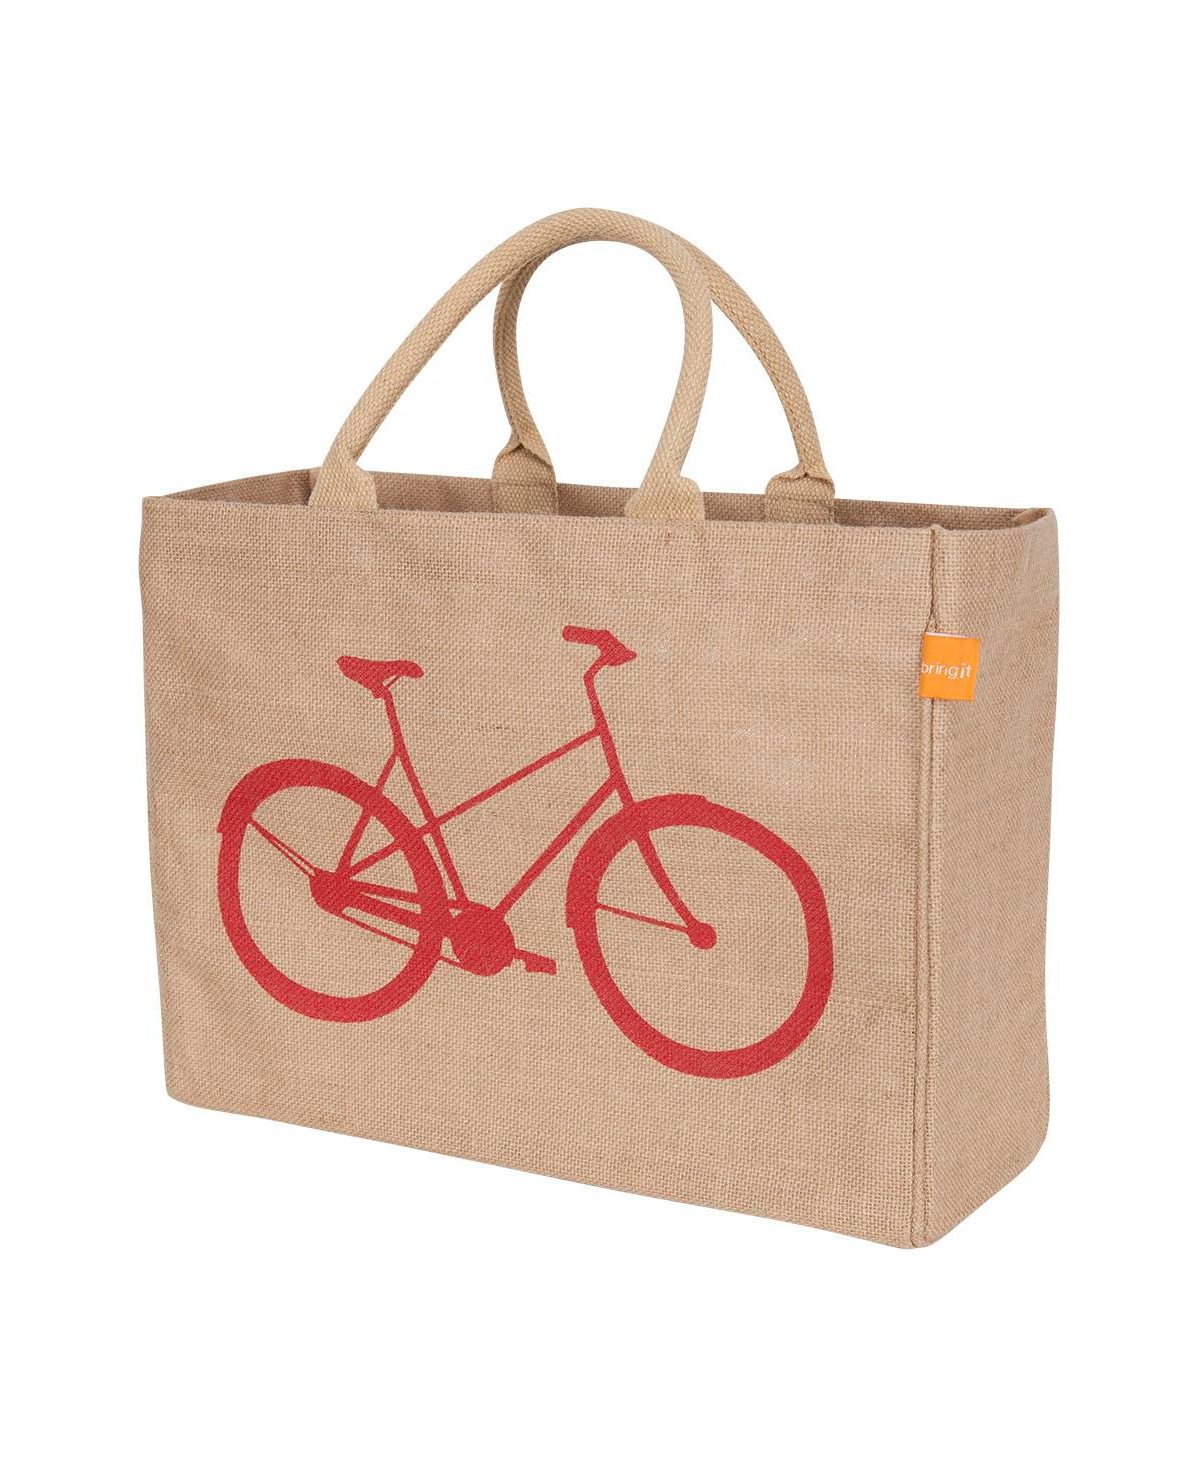 Jute Market Tote Bag with Bicycle Print - Beige